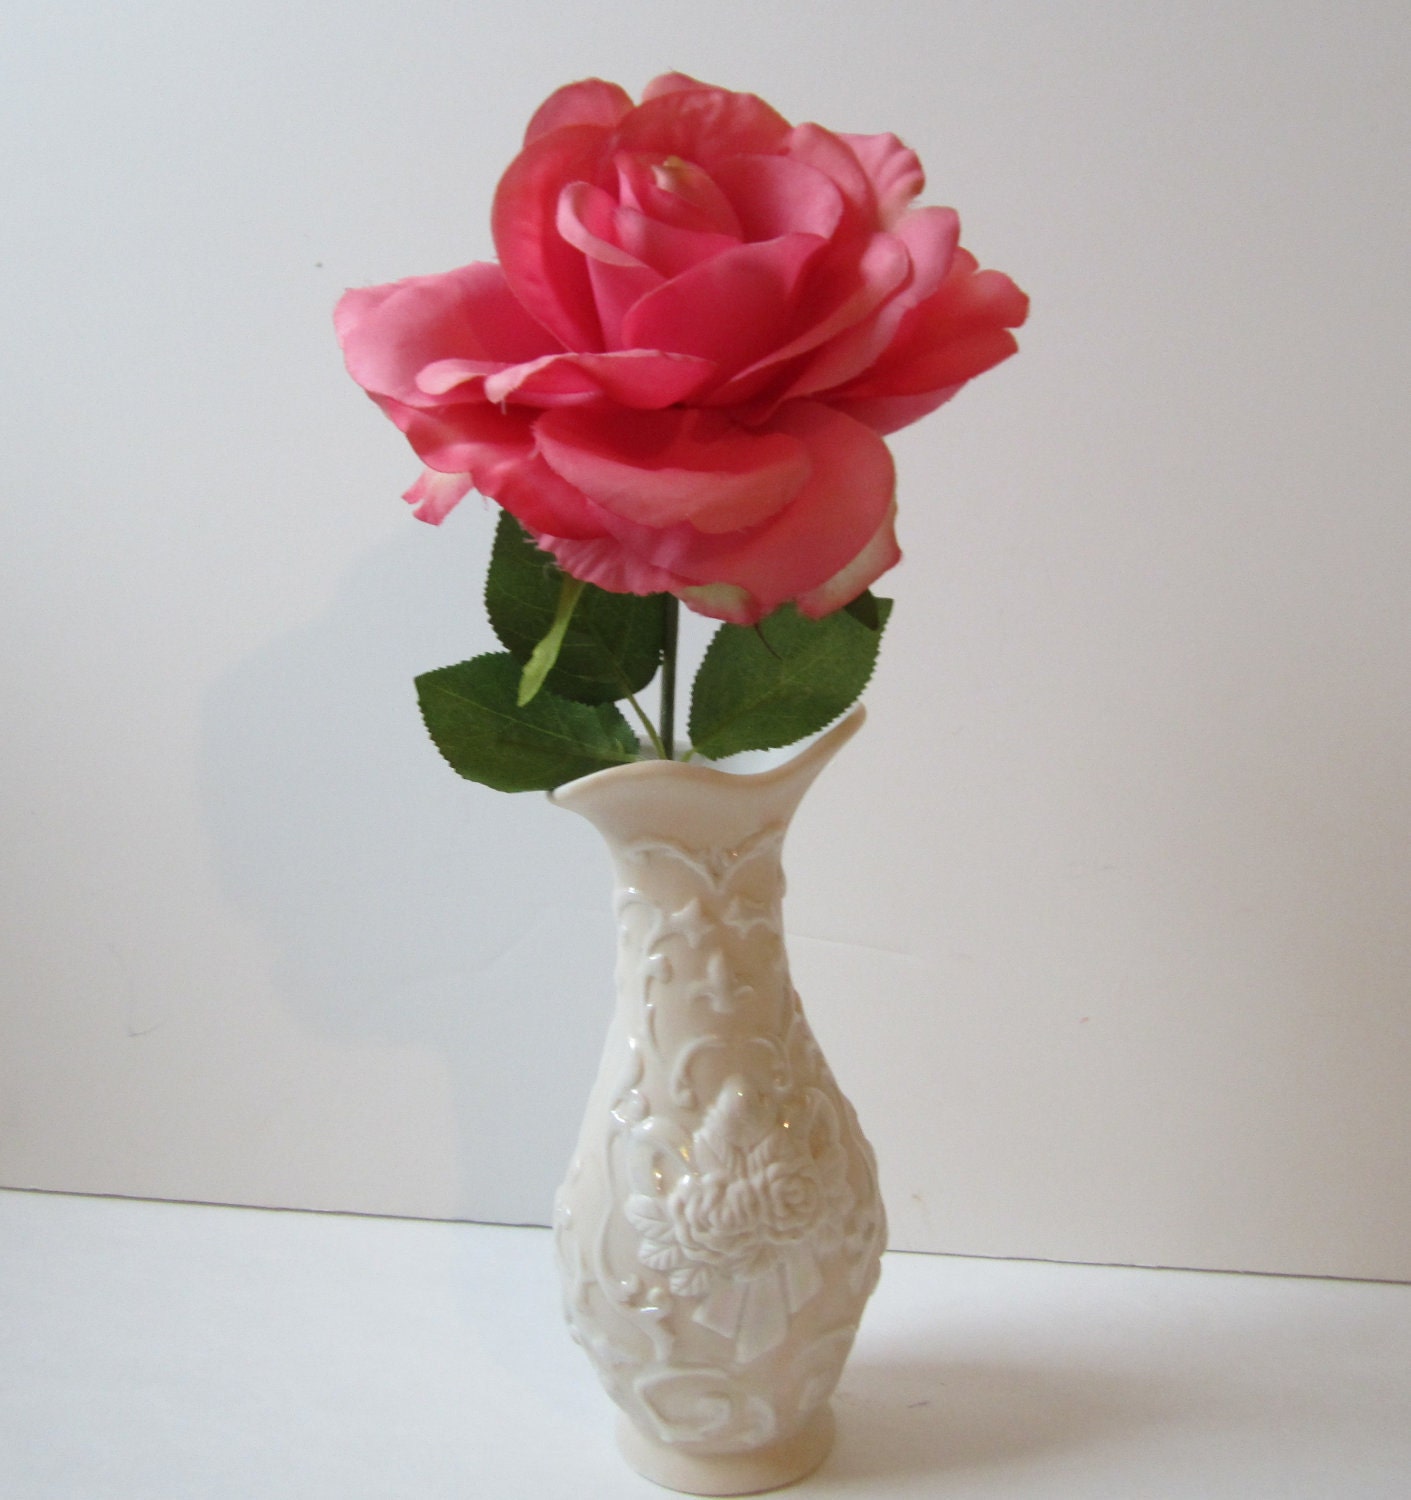 Single Pink Rose In A Vase